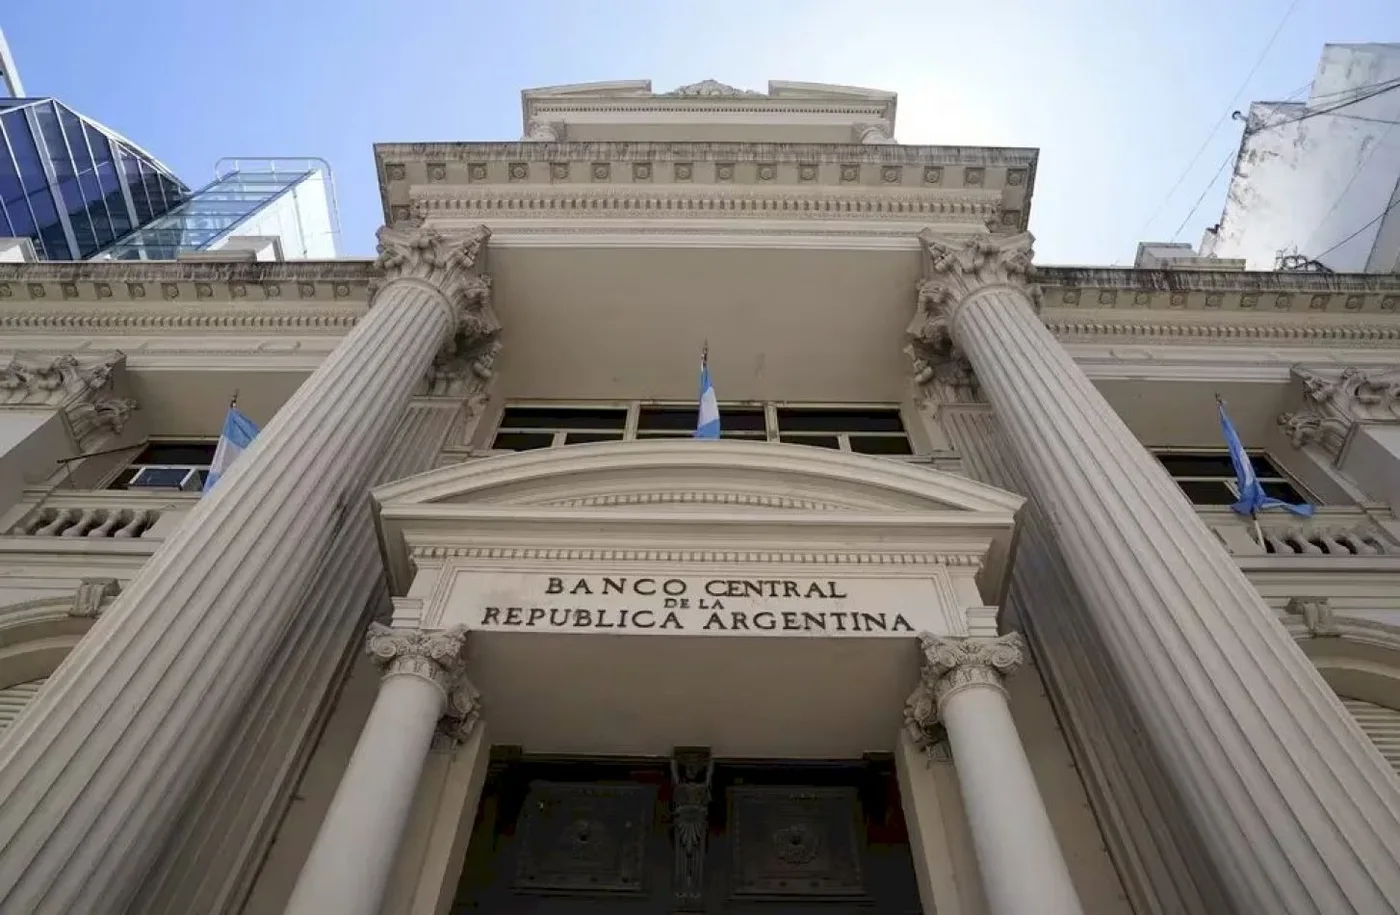 Banco Nación de la República Argentina.